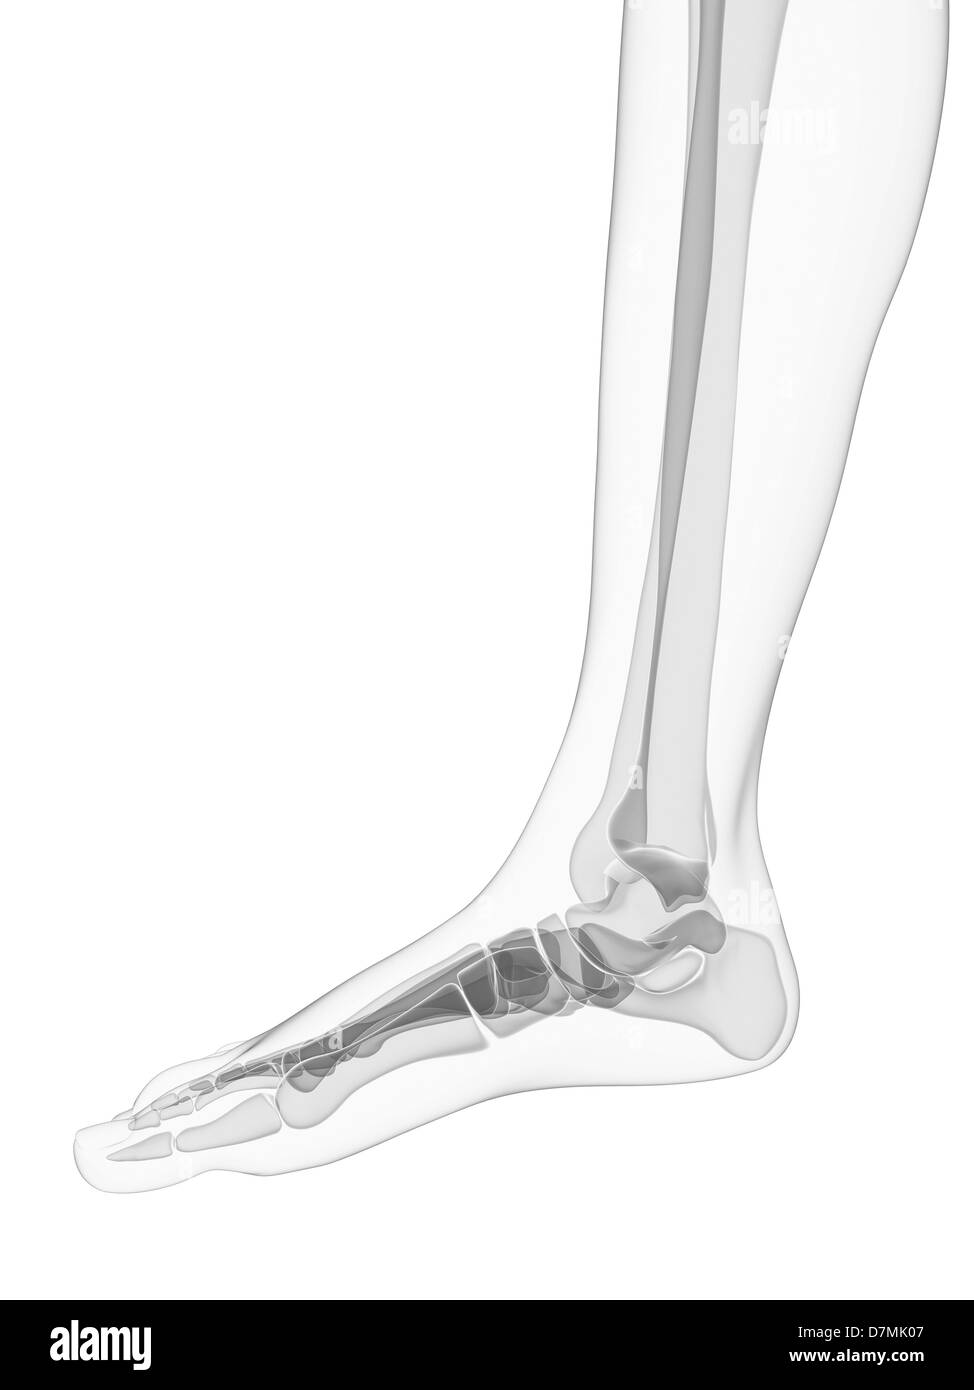 Foot bones, artwork Stock Photo